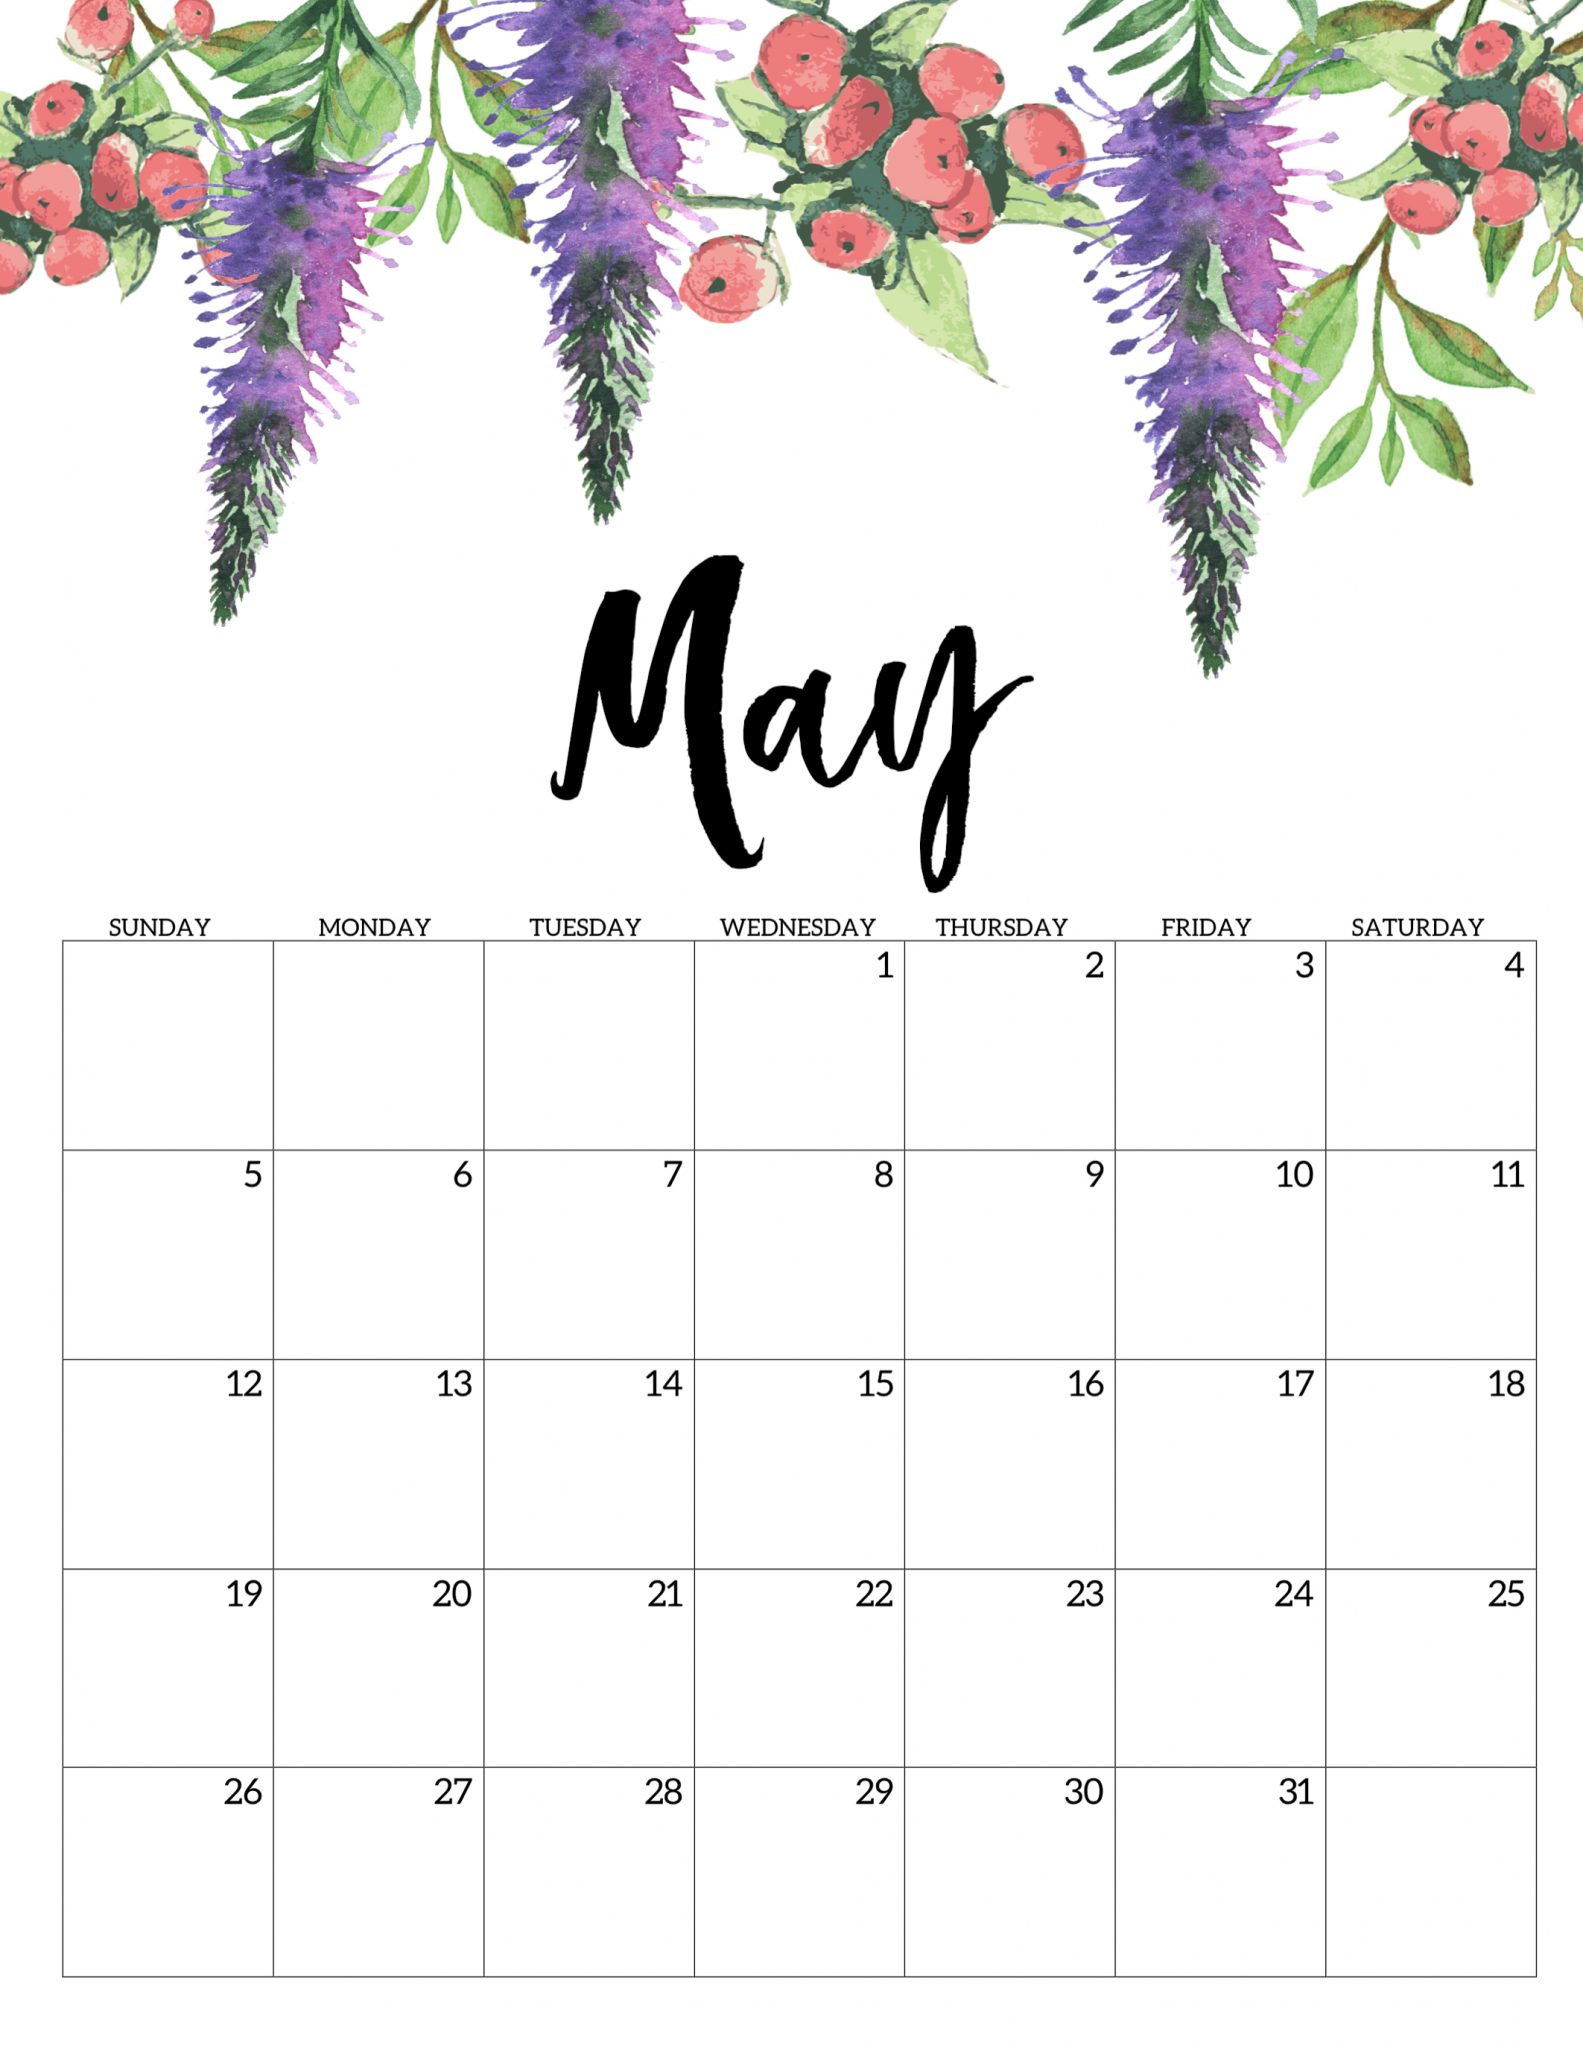 🔥 [27+] May 2019 Calendar Wallpapers WallpaperSafari